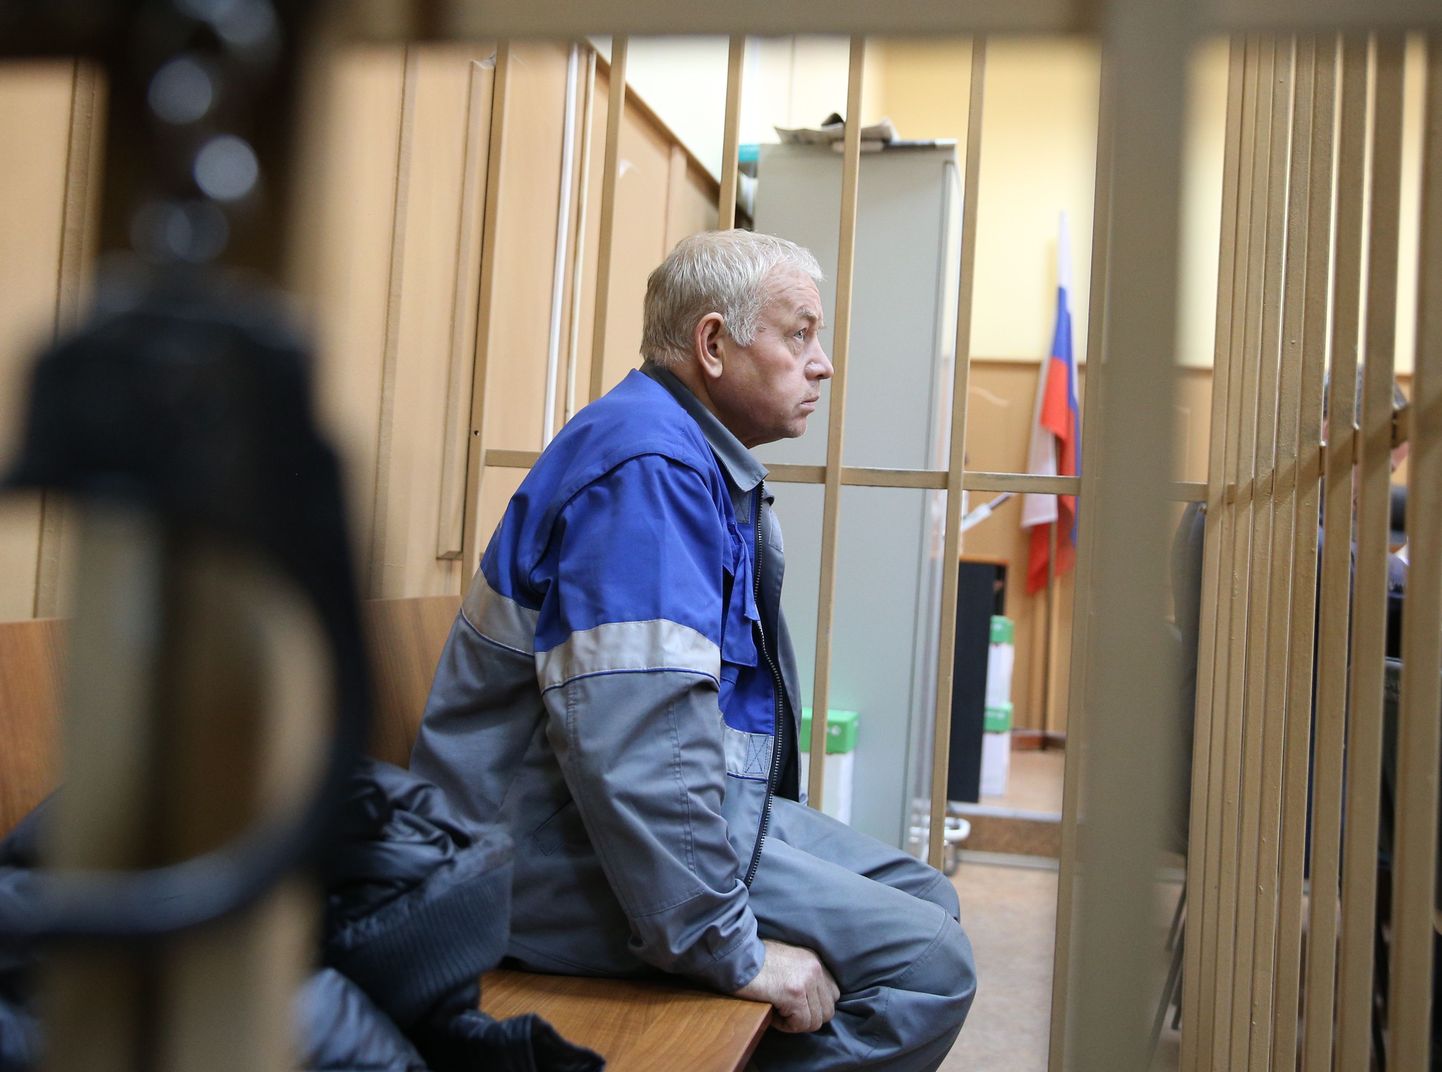 После катастрофы были задержаны пять человек. Одного из них — водителя снегоуборочной машины Владимира Мартыненко суд арестовал до 21 декабря.